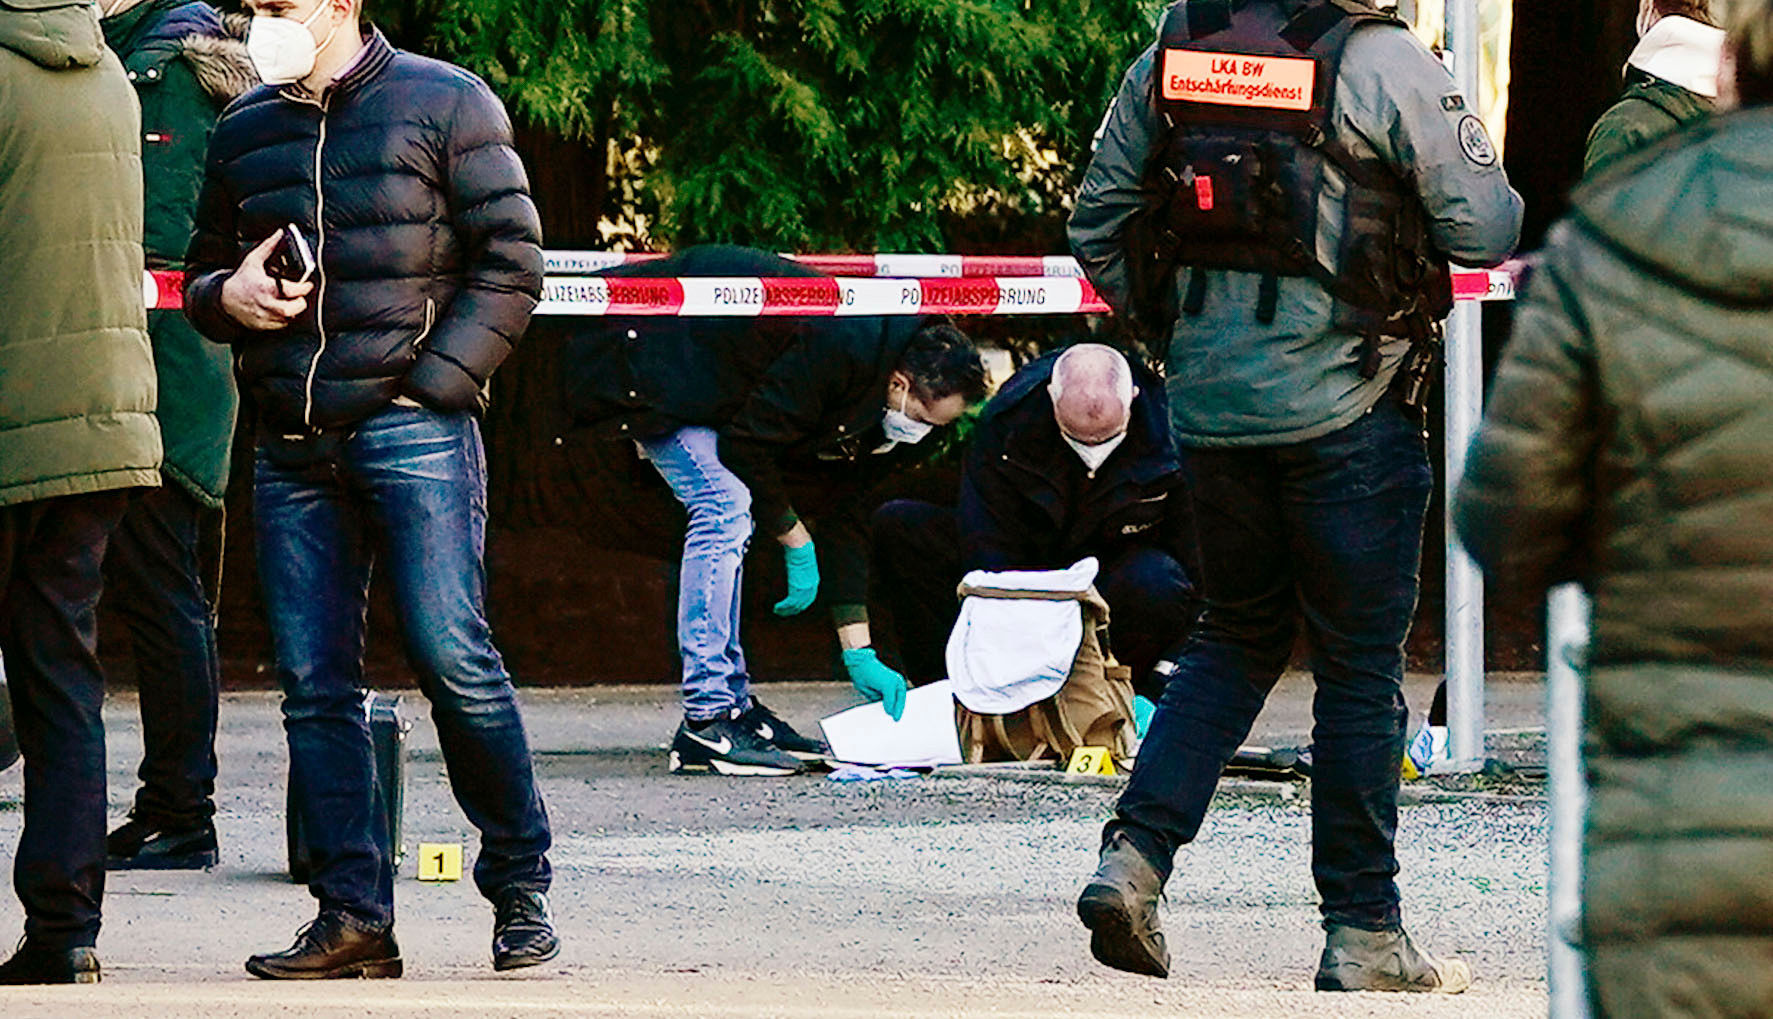 Heidelberg shooting: Lone gunman dead after injuring four in German university